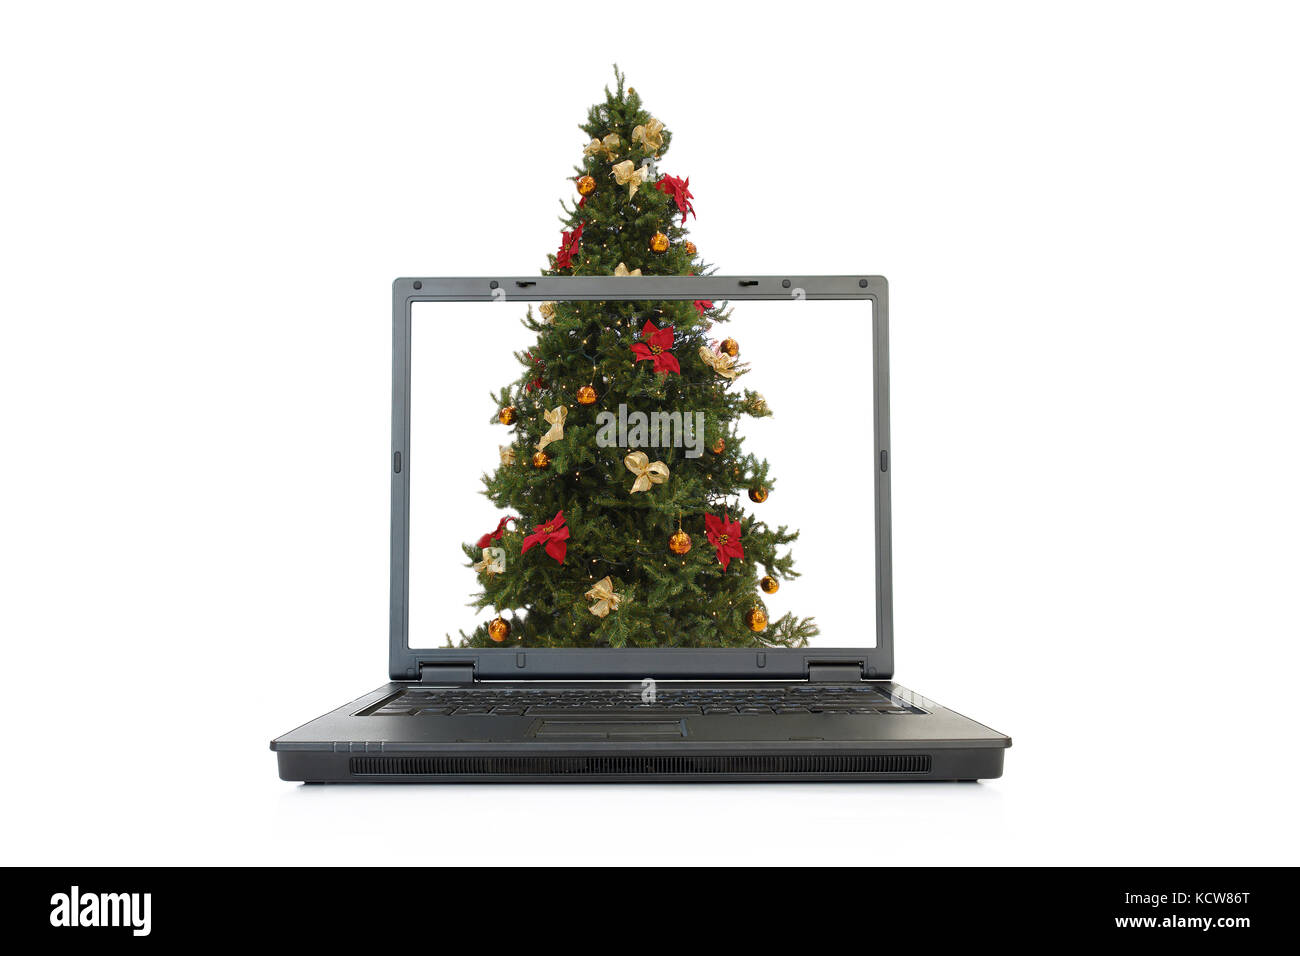 Grand arbre de Noël qui dépasse de l'écran de l'ordinateur portable isolated on white Banque D'Images